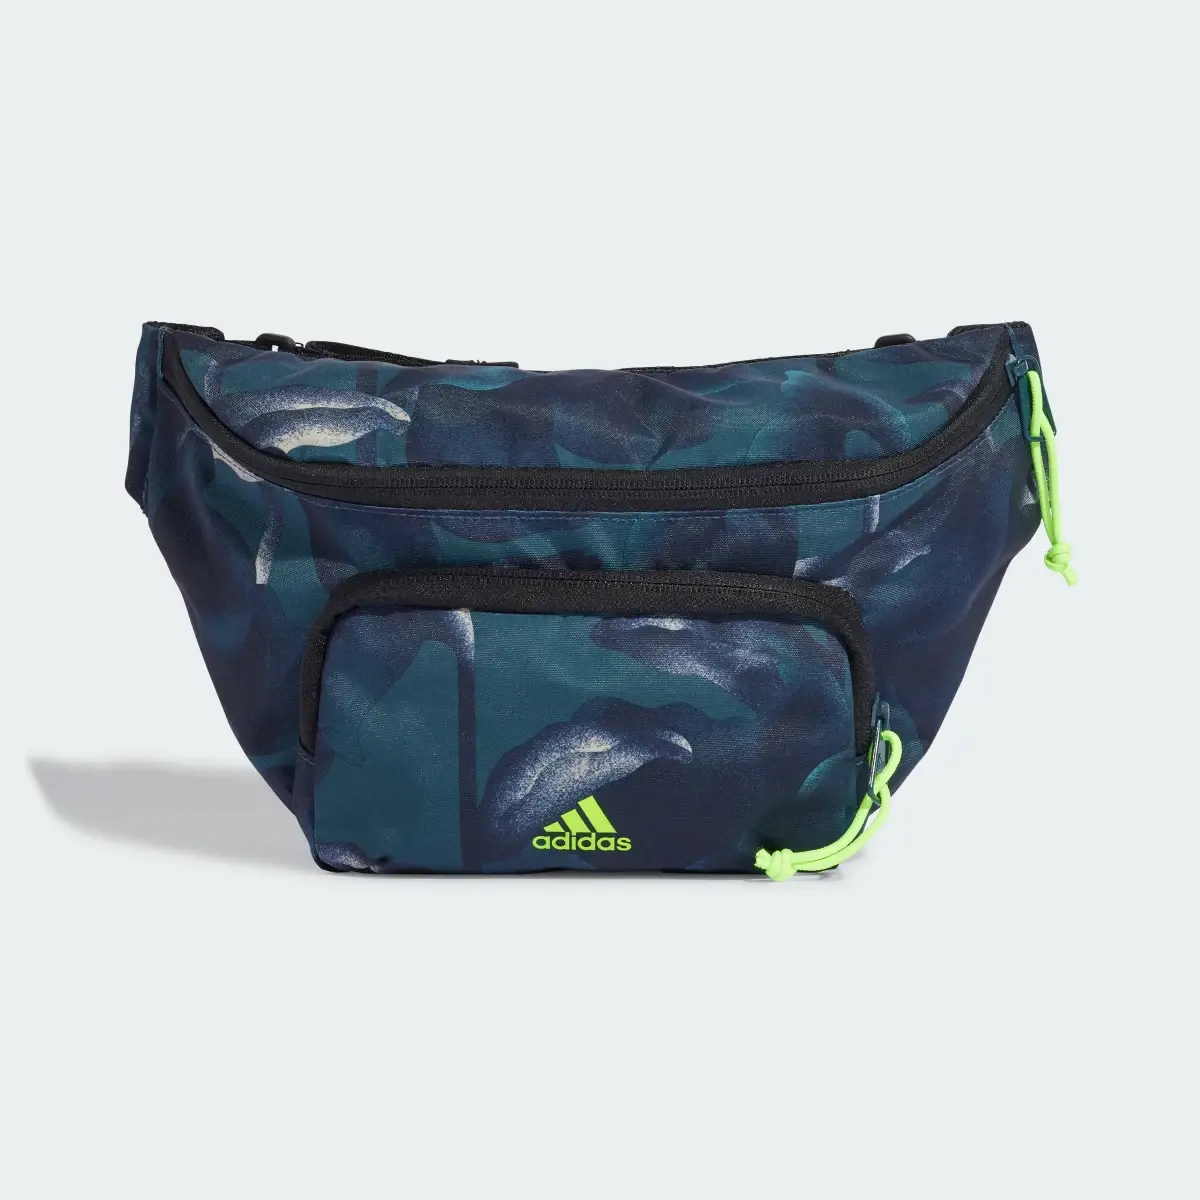 Adidas City Explorer Waist Bag. 2